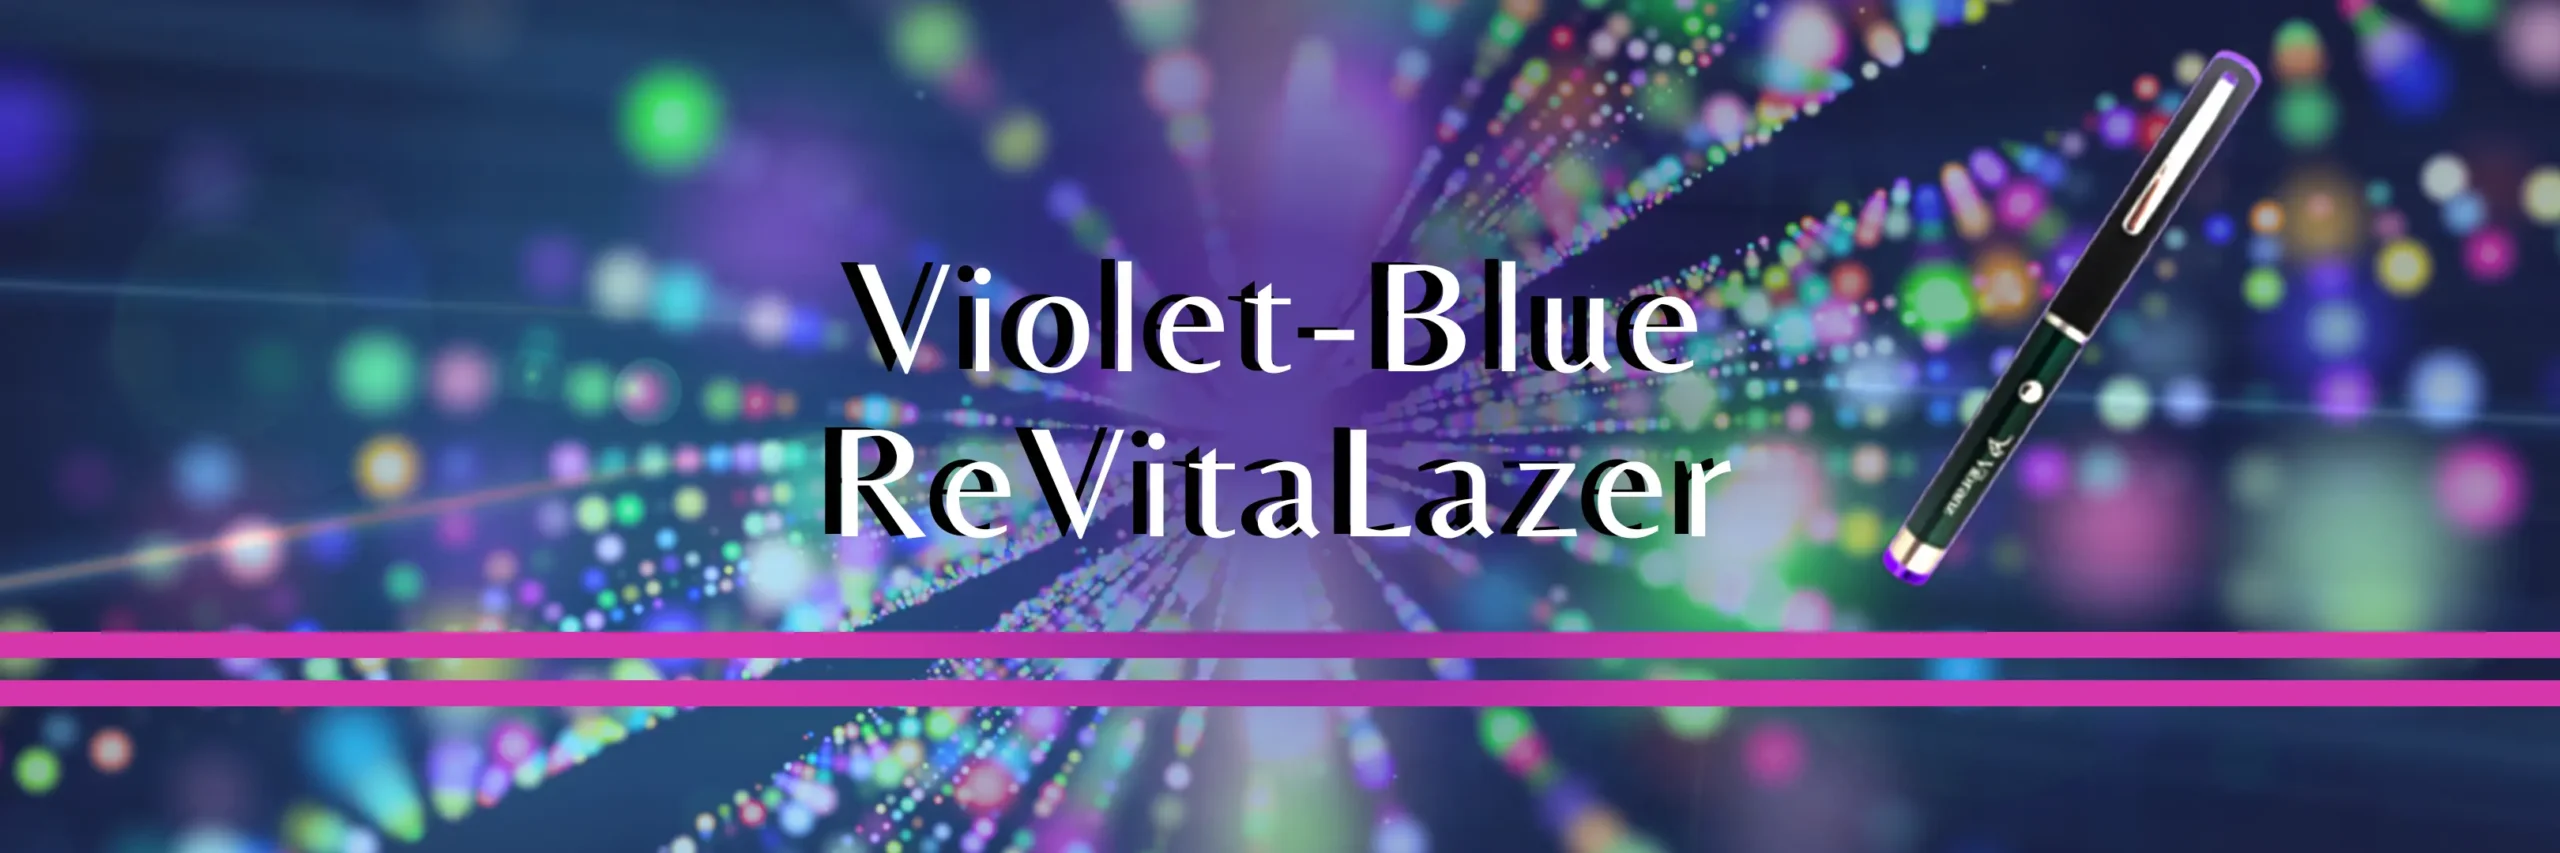 Violet Blue Revitalazer violet laser